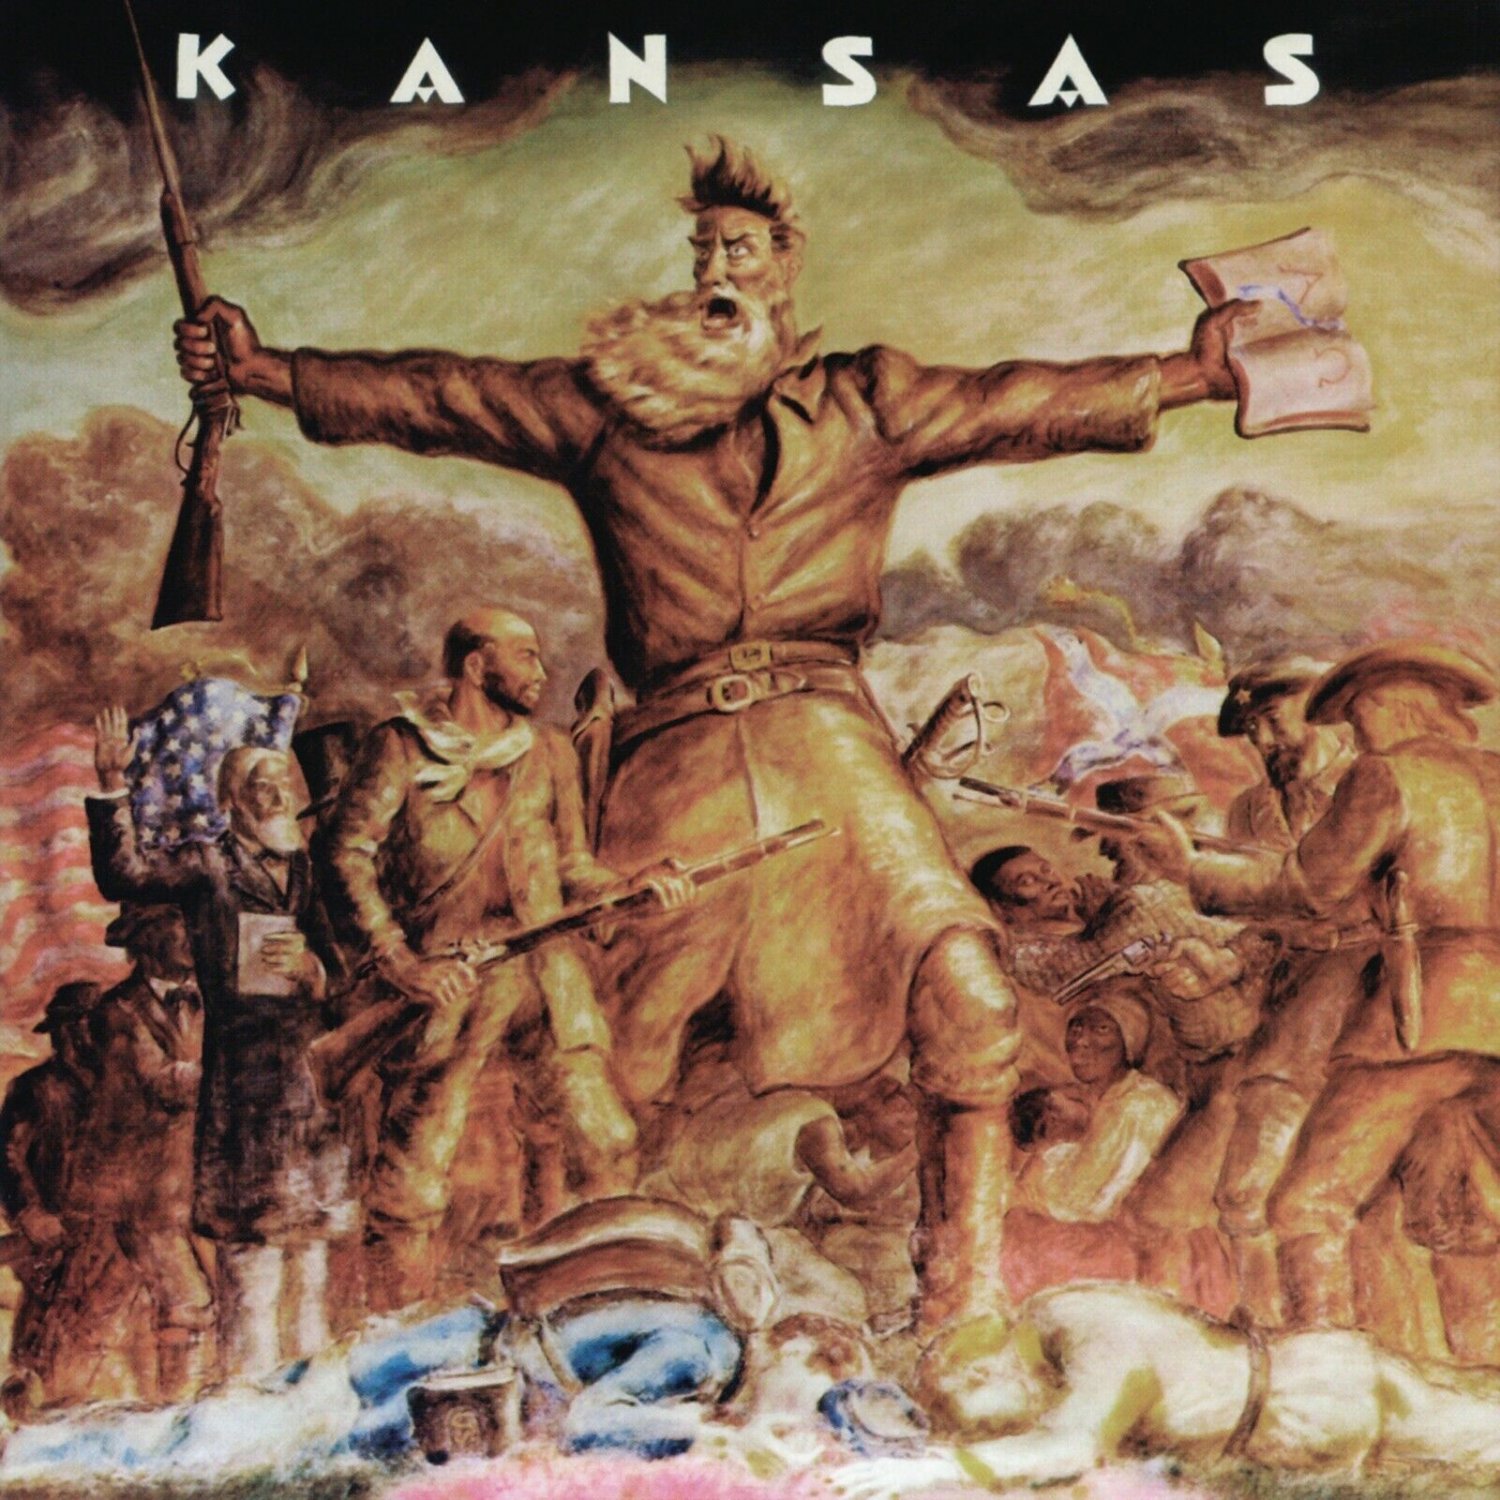 KANSAS First Album BANNER HUGE 4X4 Ft Fabric Poster Tapestry Flag album art